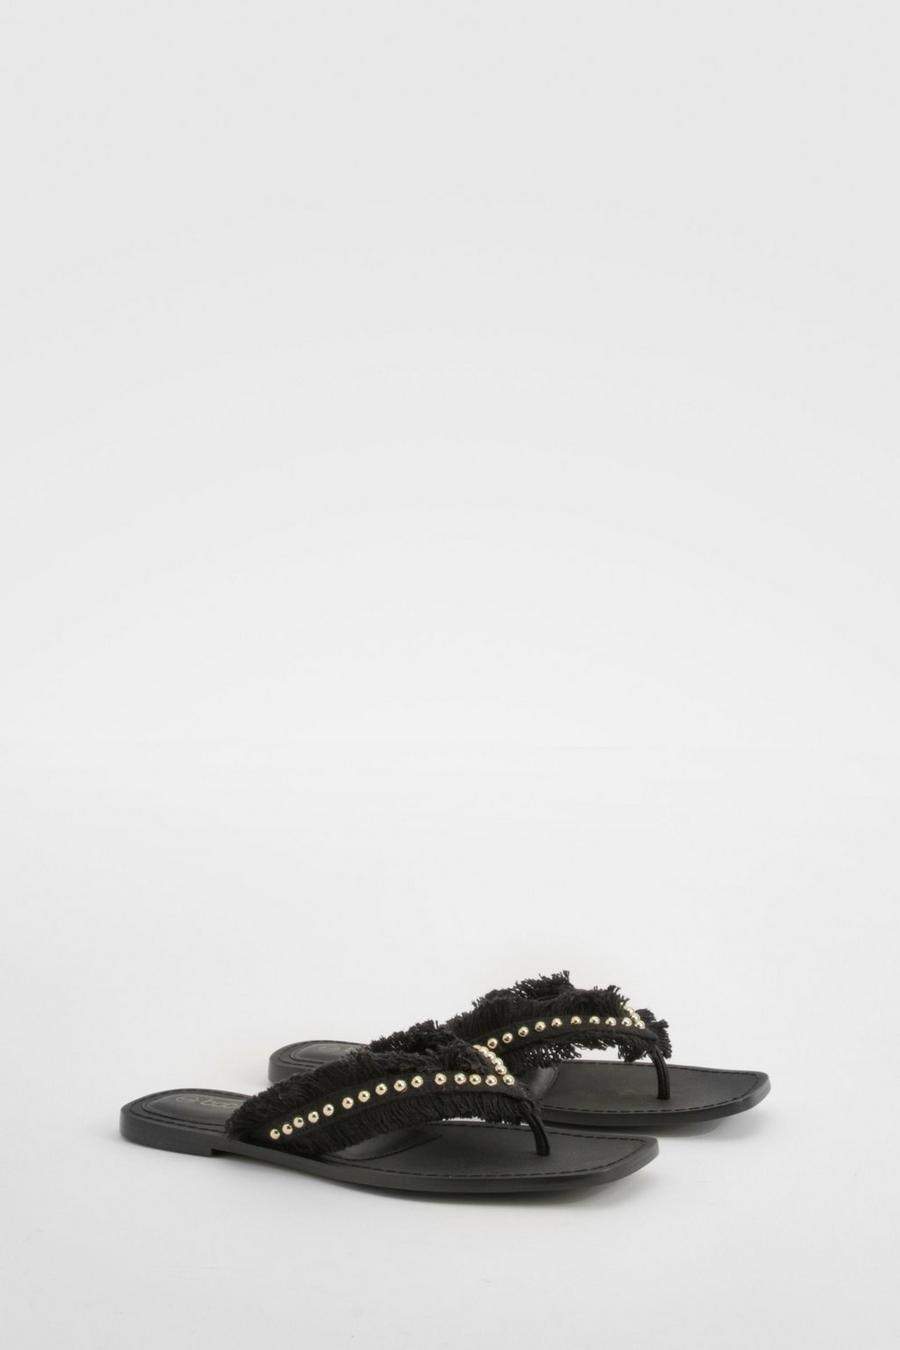 Black Embroidered Stud Flip Flop Sandals